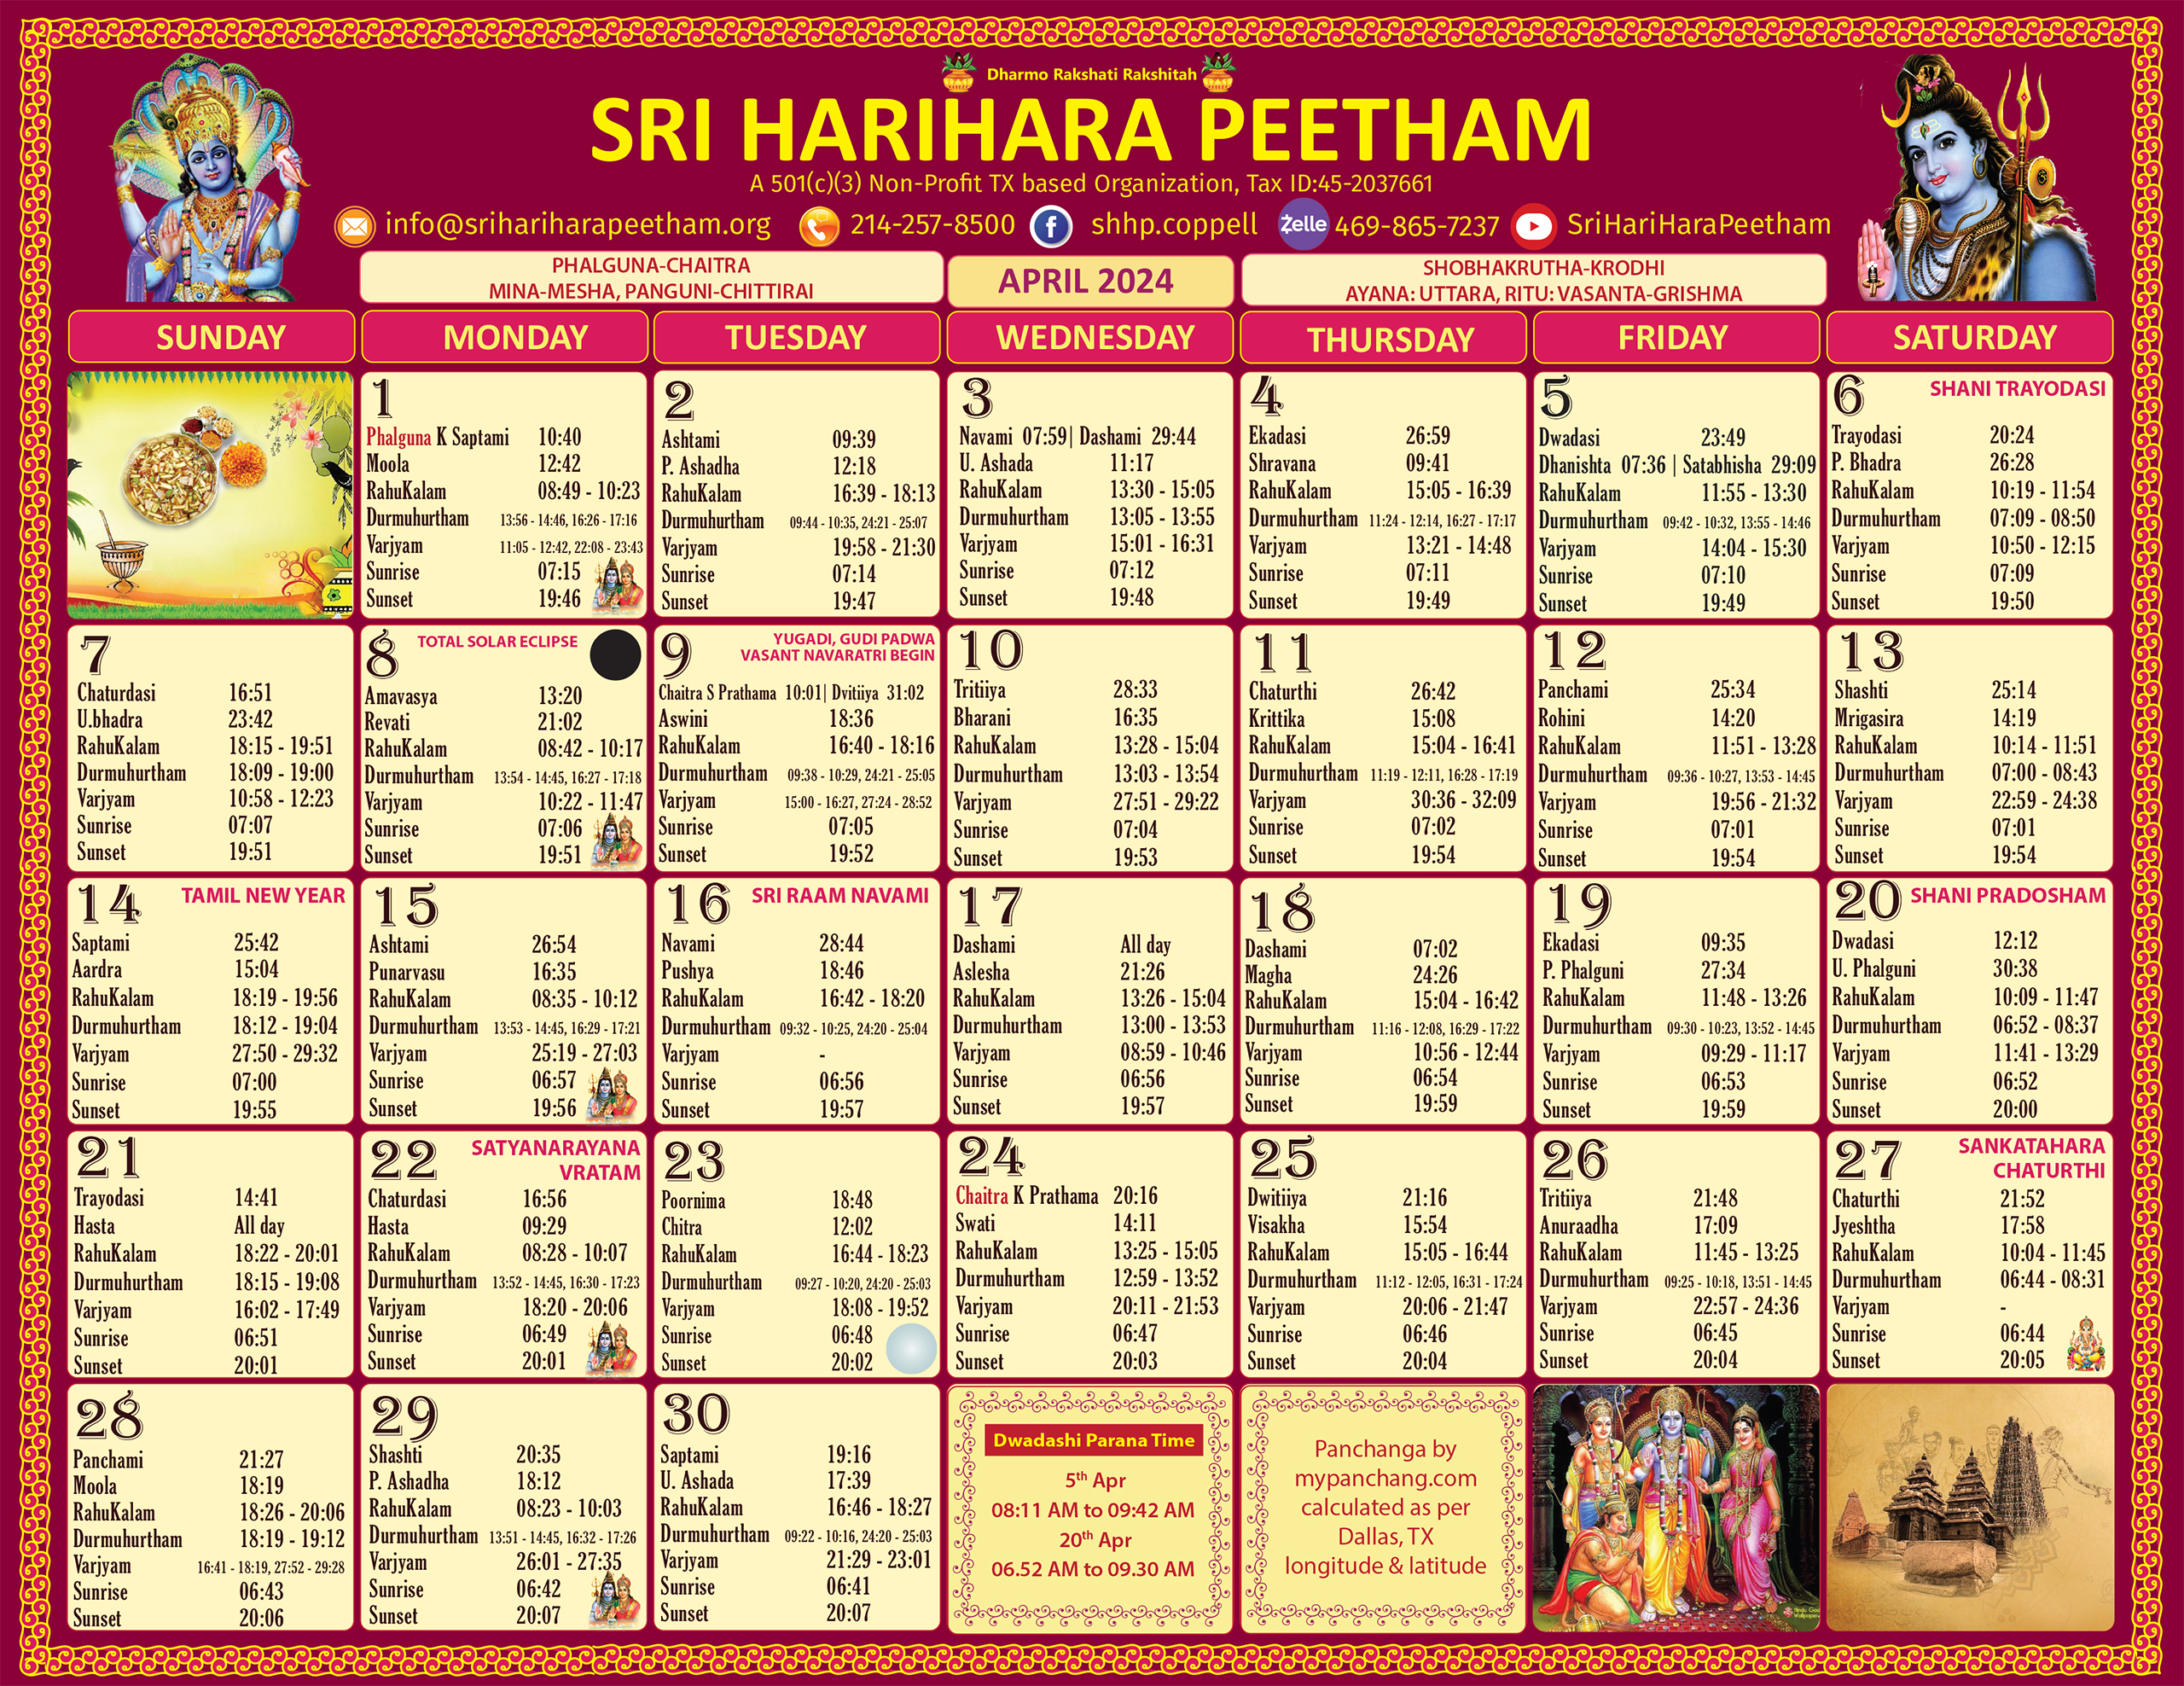 Sri HariHara Peetham's April 2024 calendar page